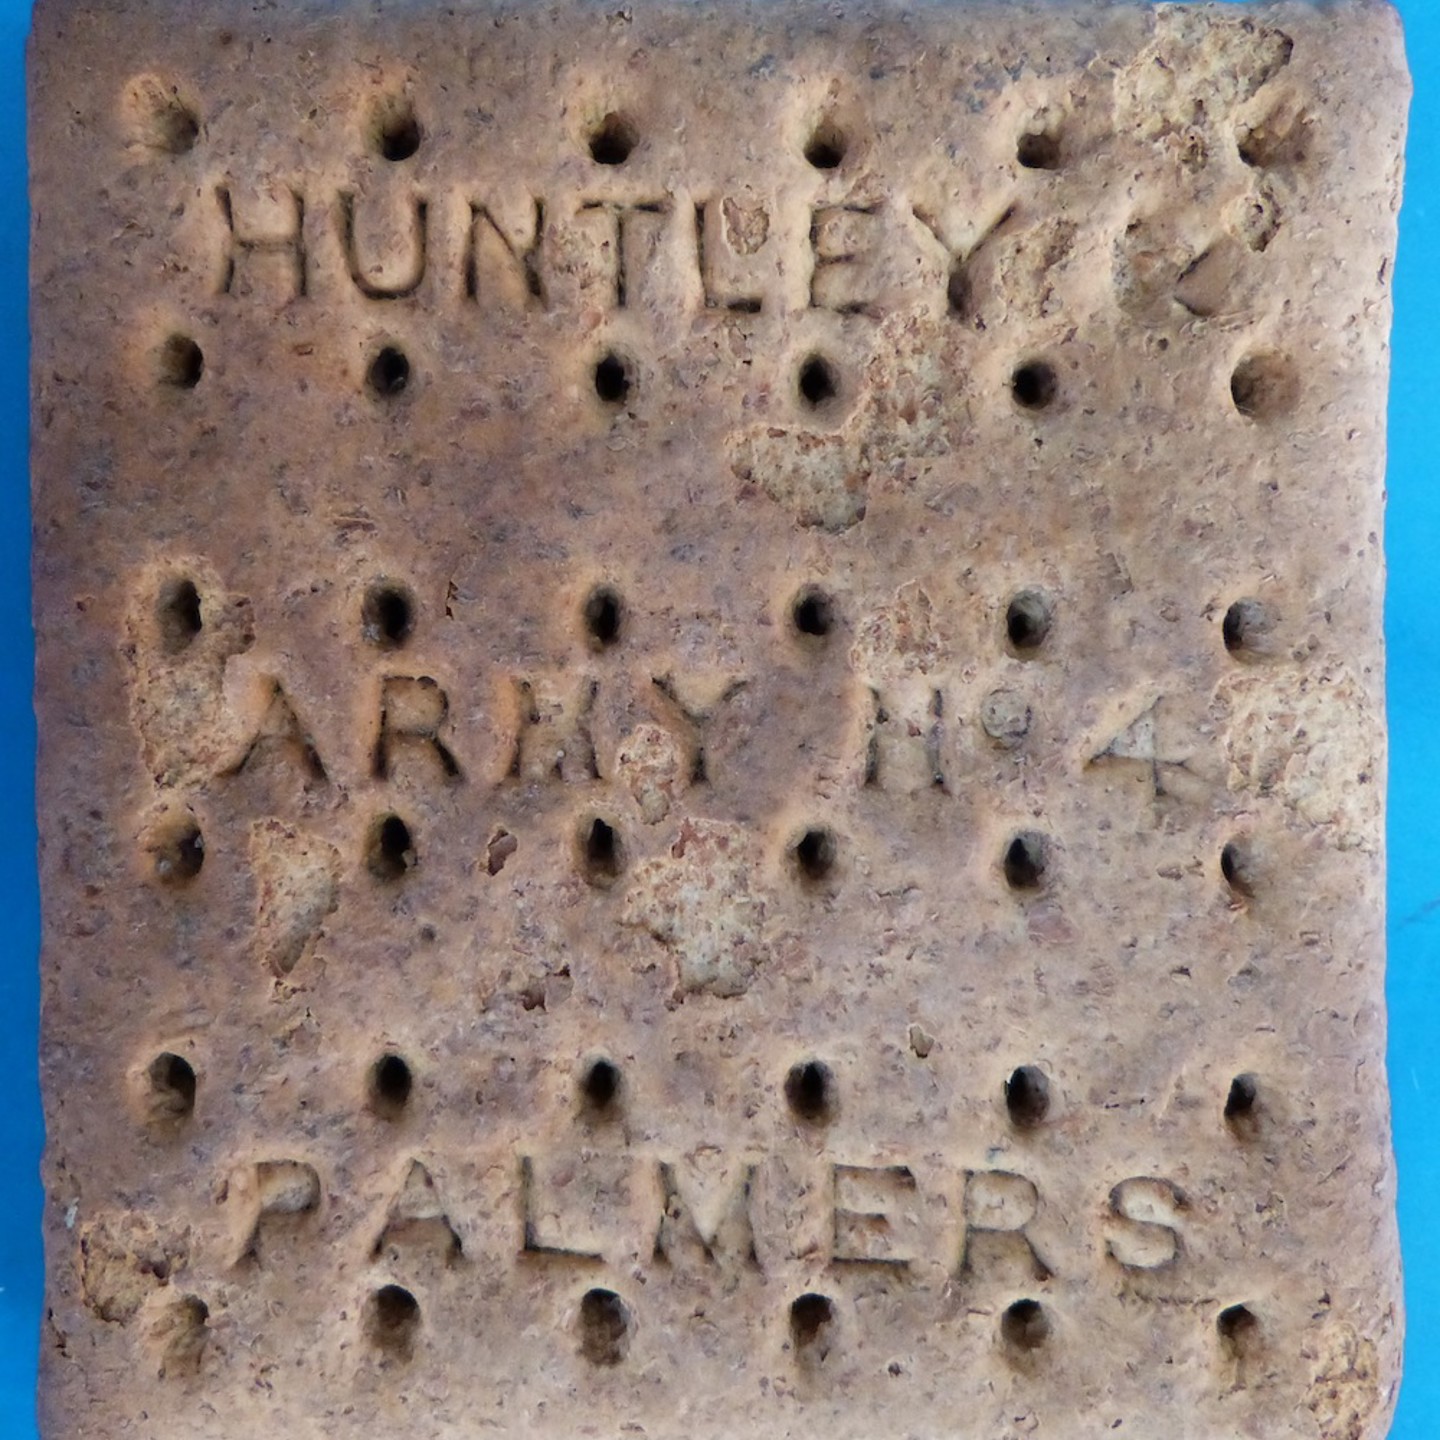 Huntley & Palmers Biscuit Sold Ś500